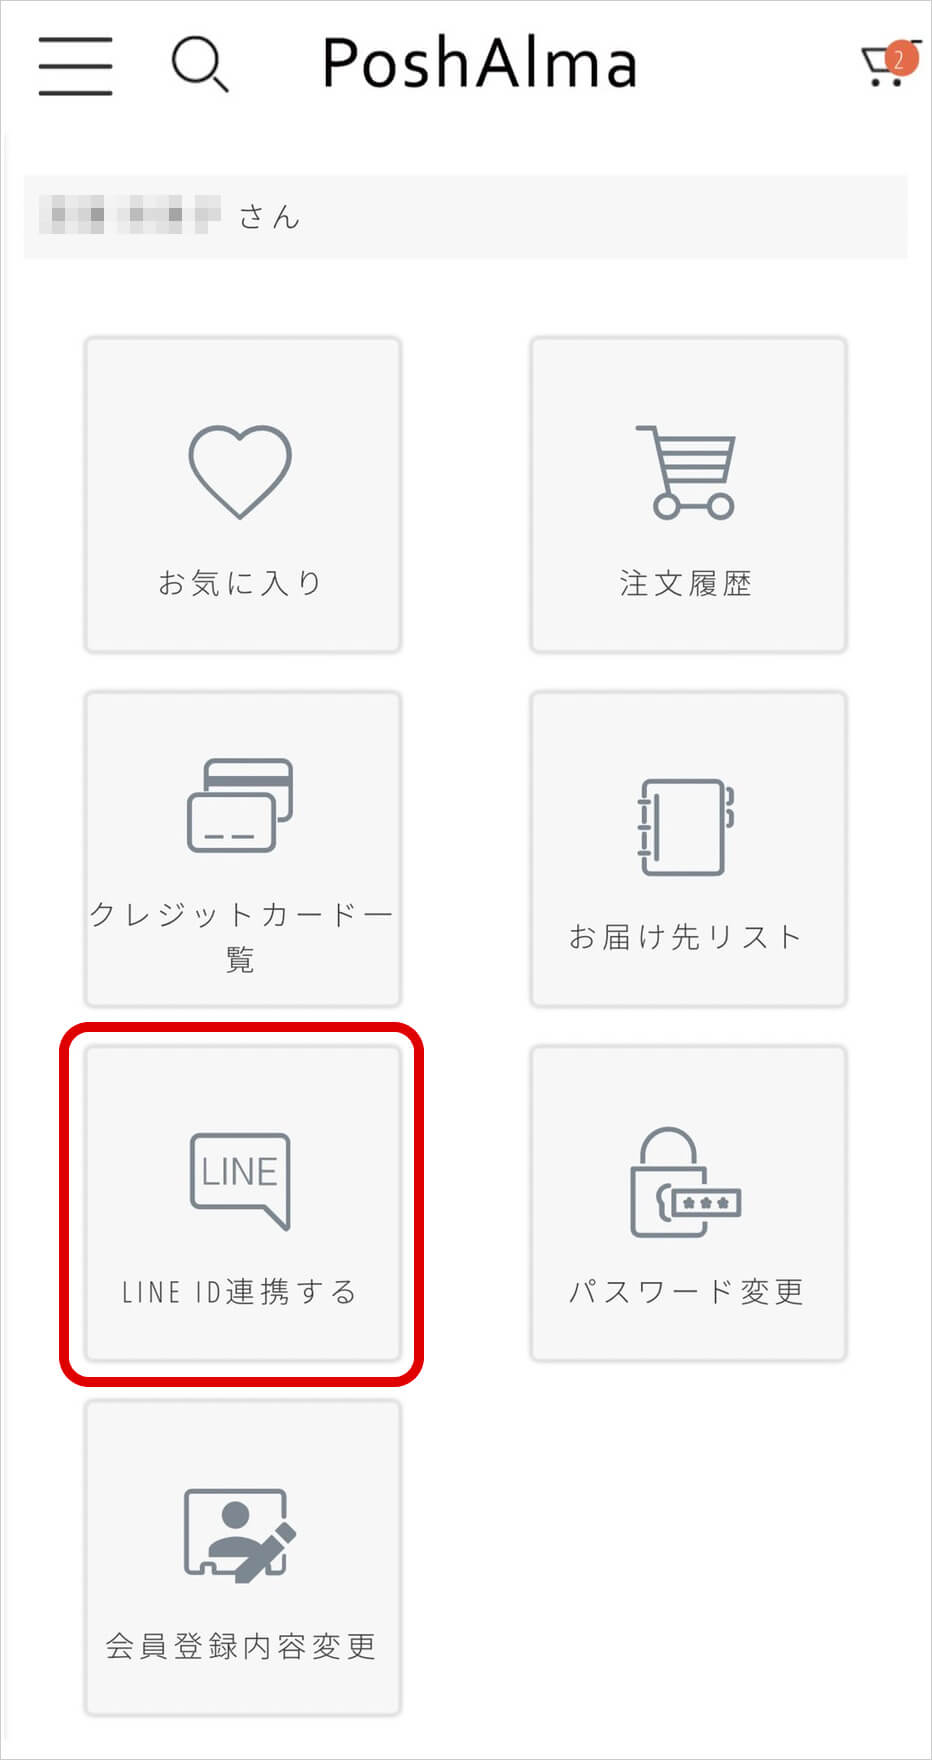 マイページのLINE ID連携のボタンをクリック